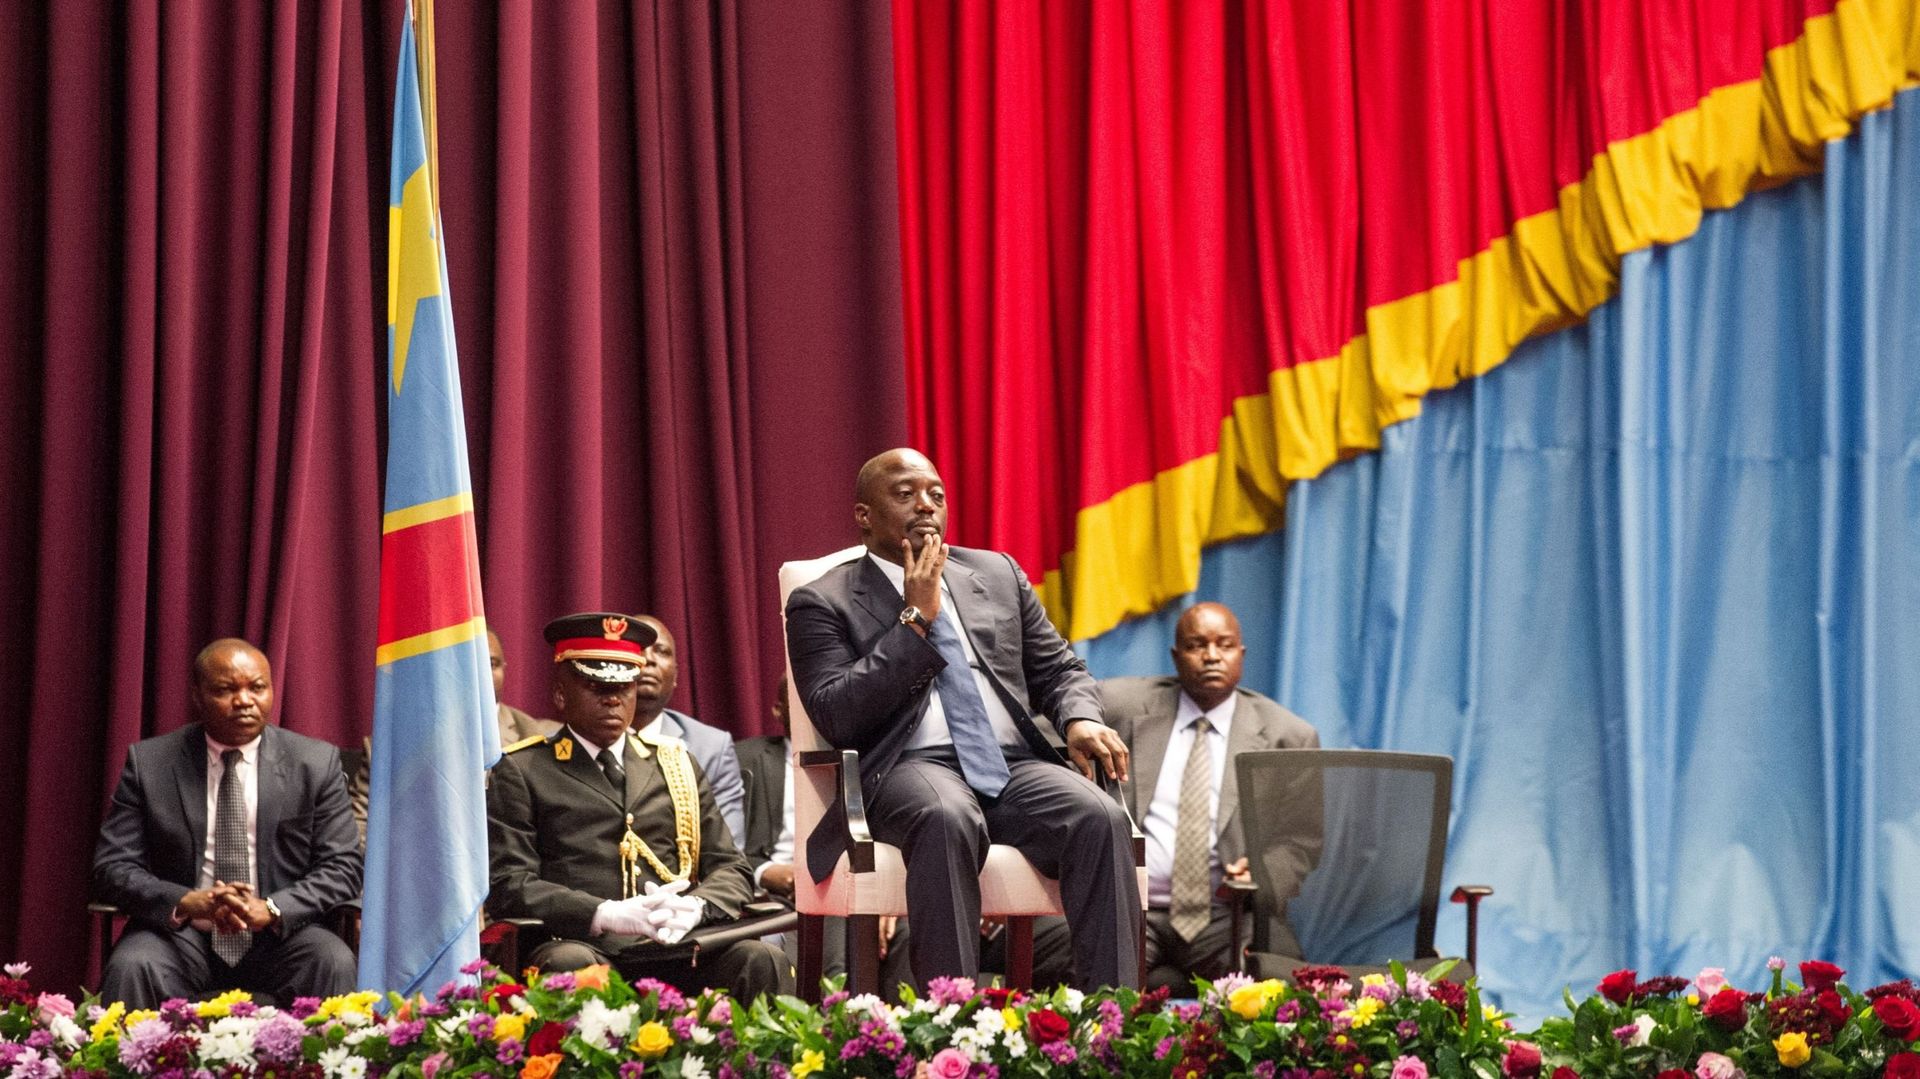 Lors de son discours à la nation mercredi, le président Kabila a promis que "les crimes dans le Kasaï ne resteront pas impunis"